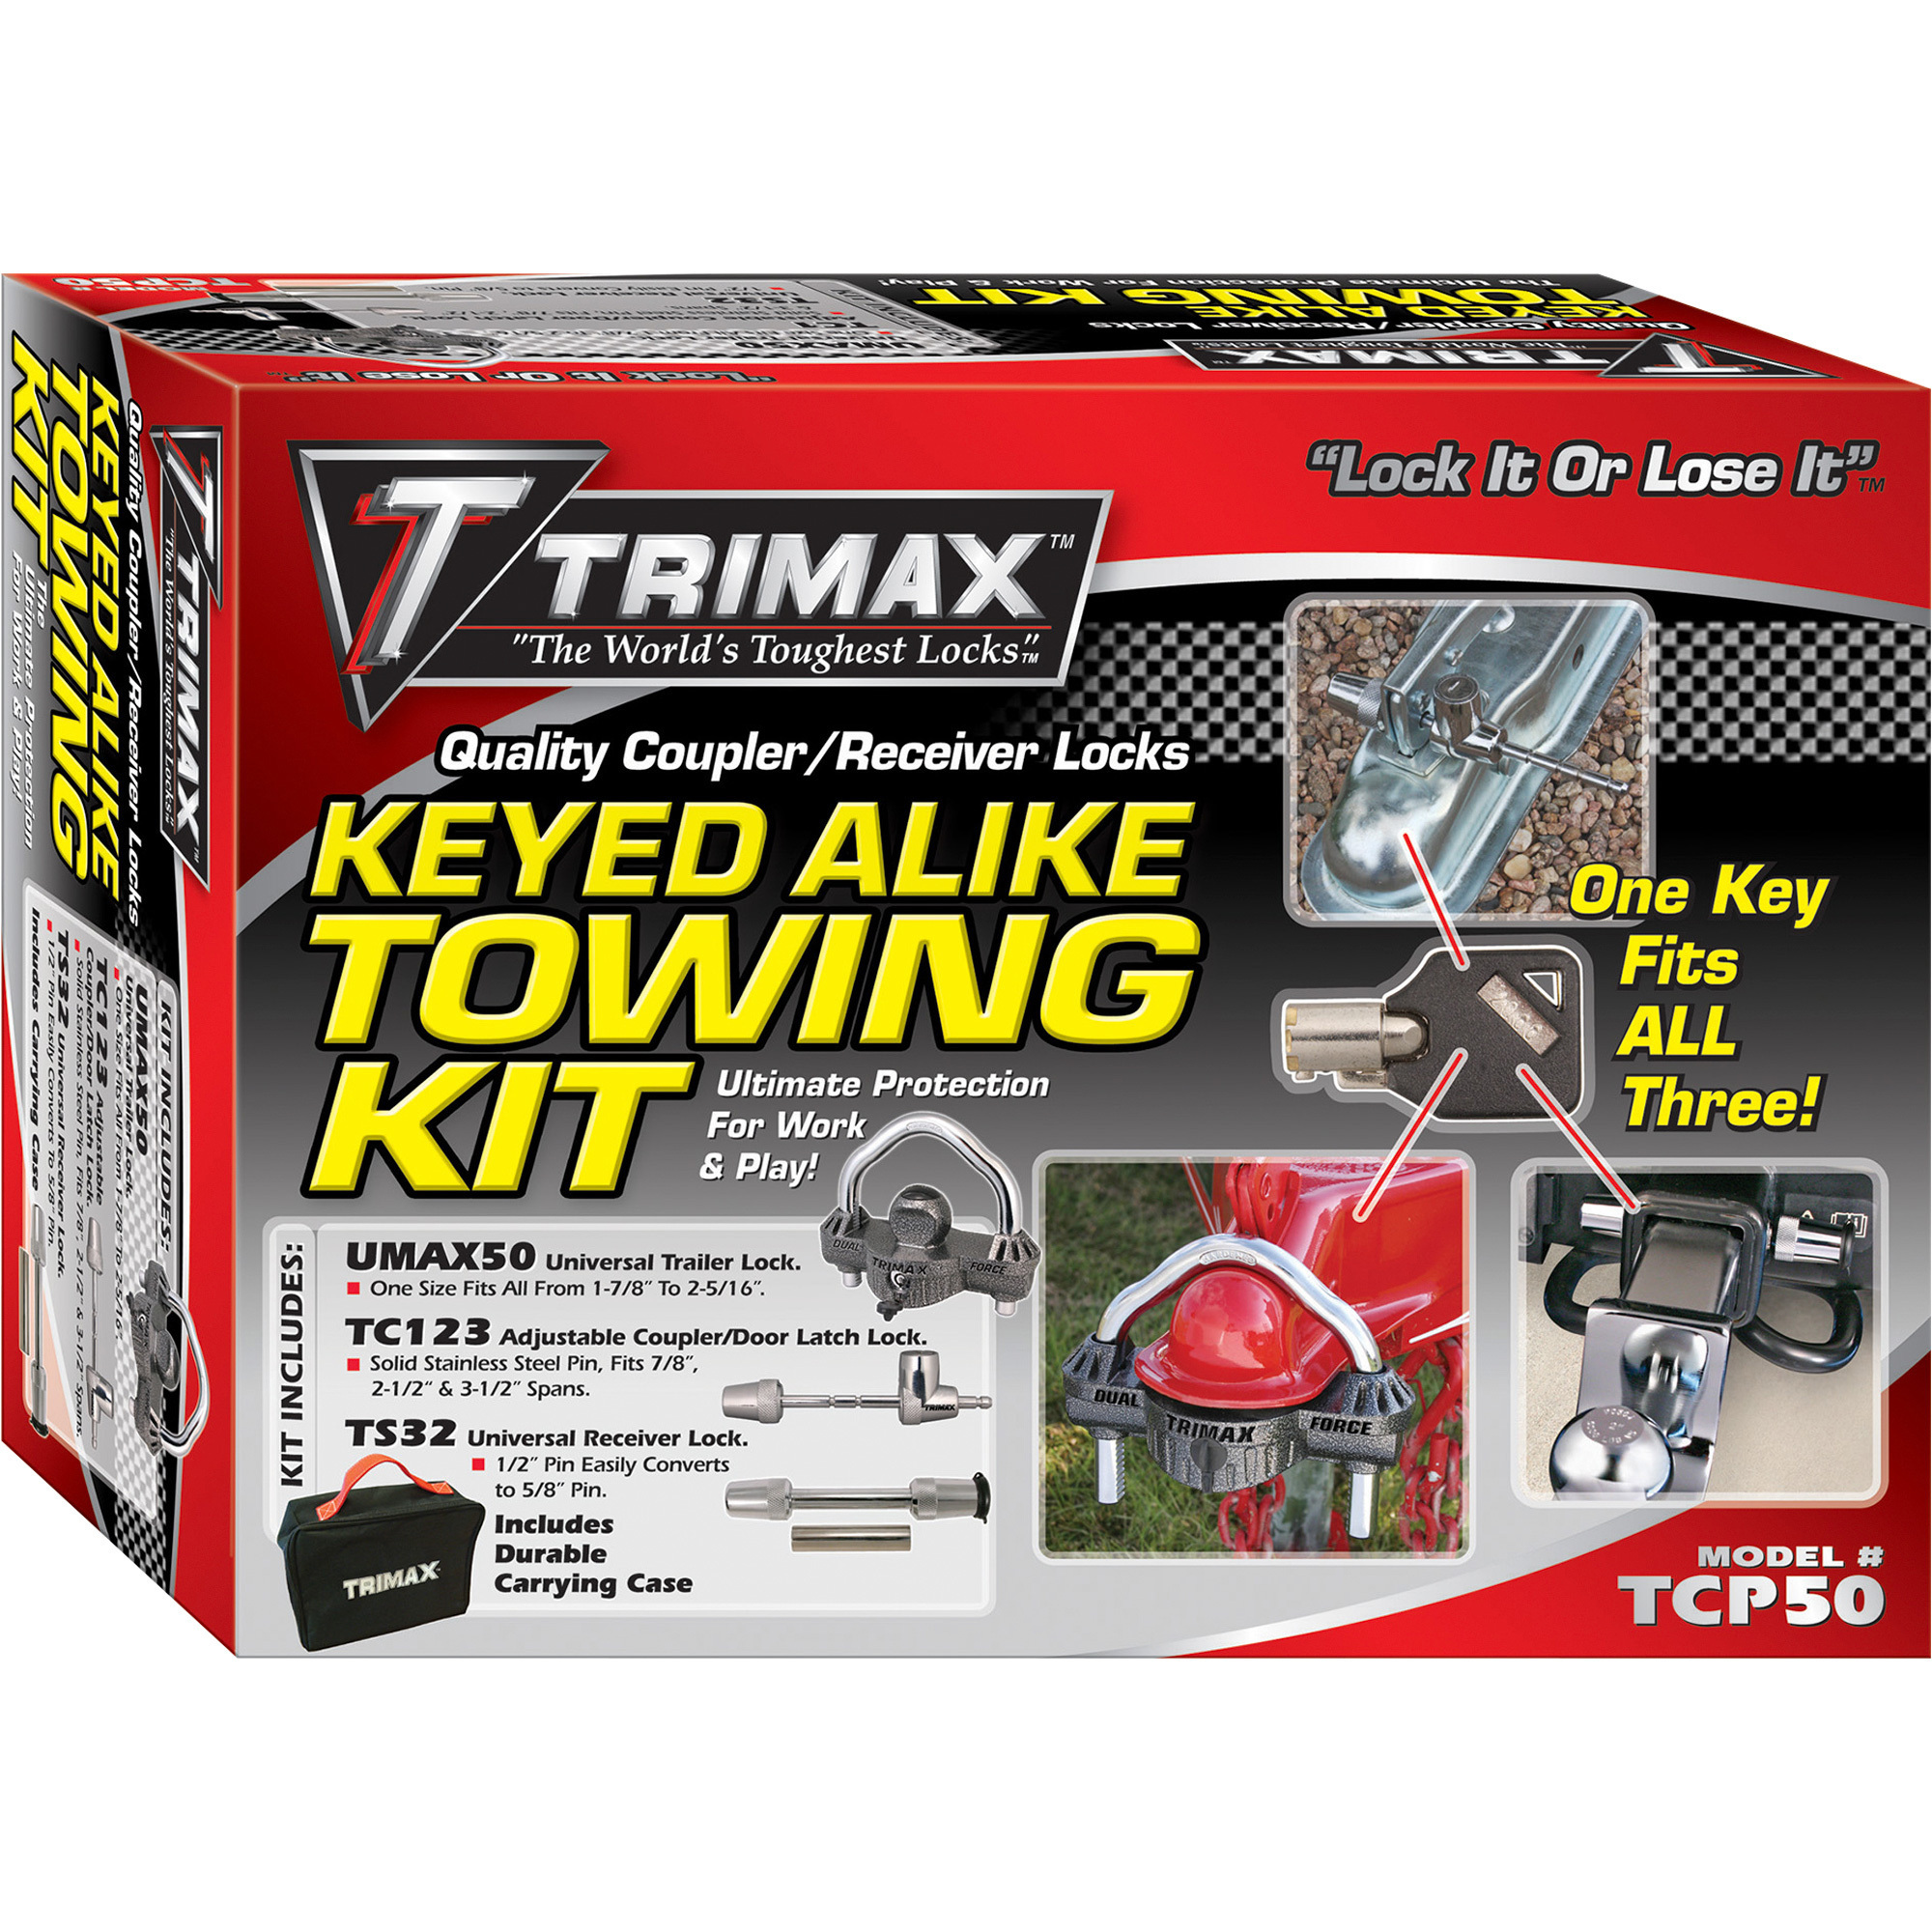 Trimax Keyed Alike Towing Kit, Model TCP50